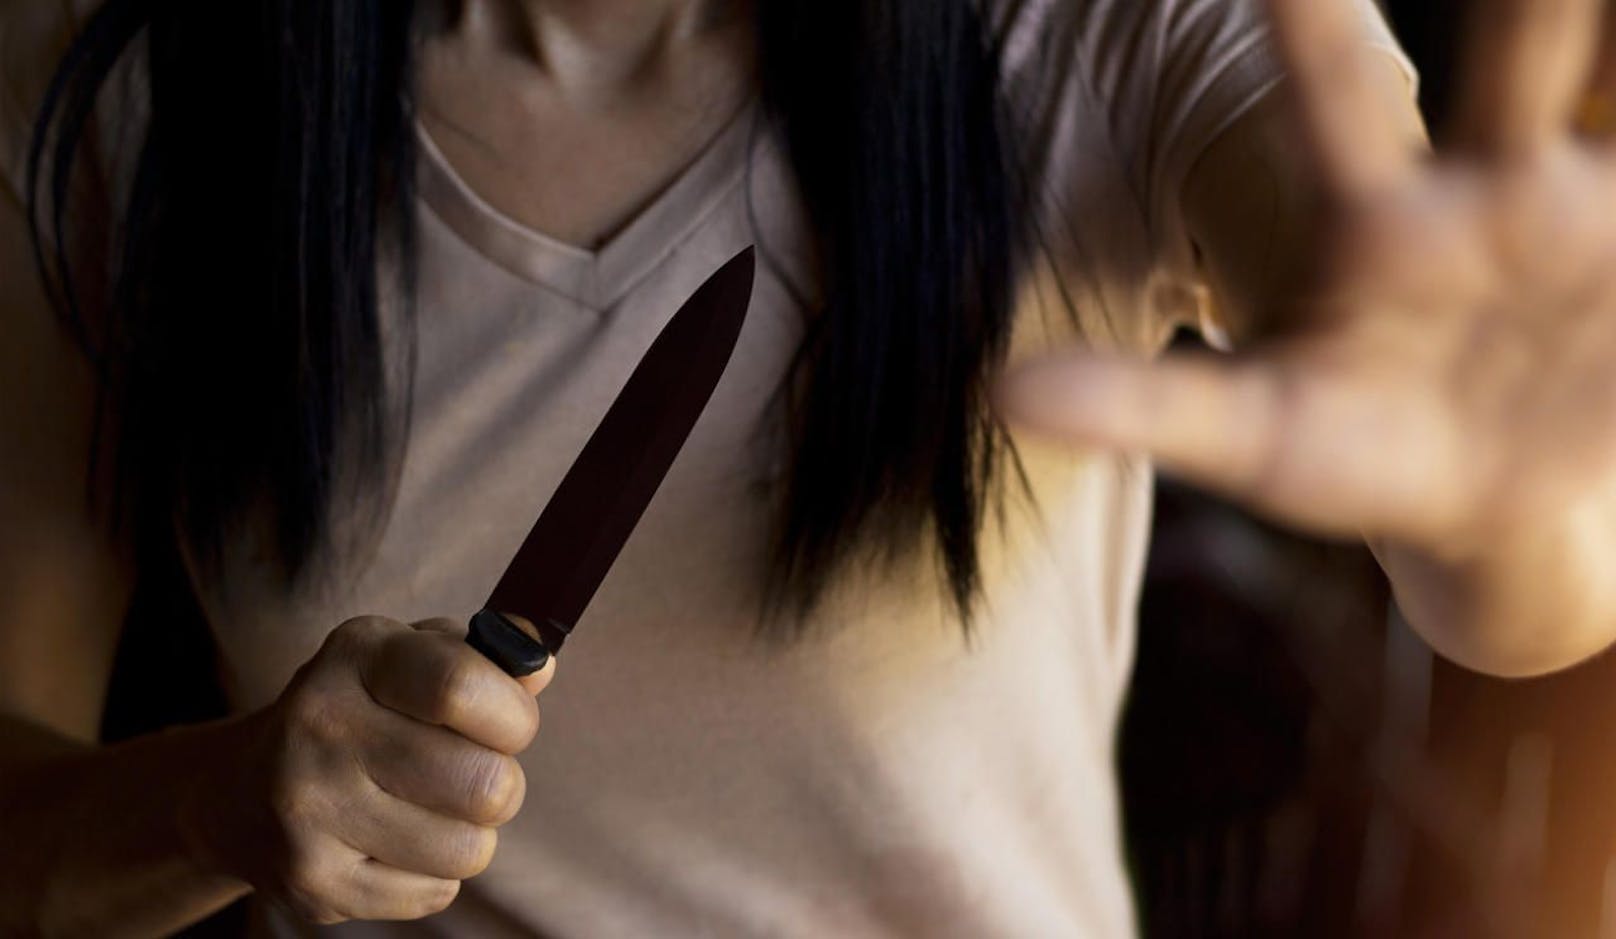 Die Ehefrau hielt bei der Attacke ein Messer in der Hand